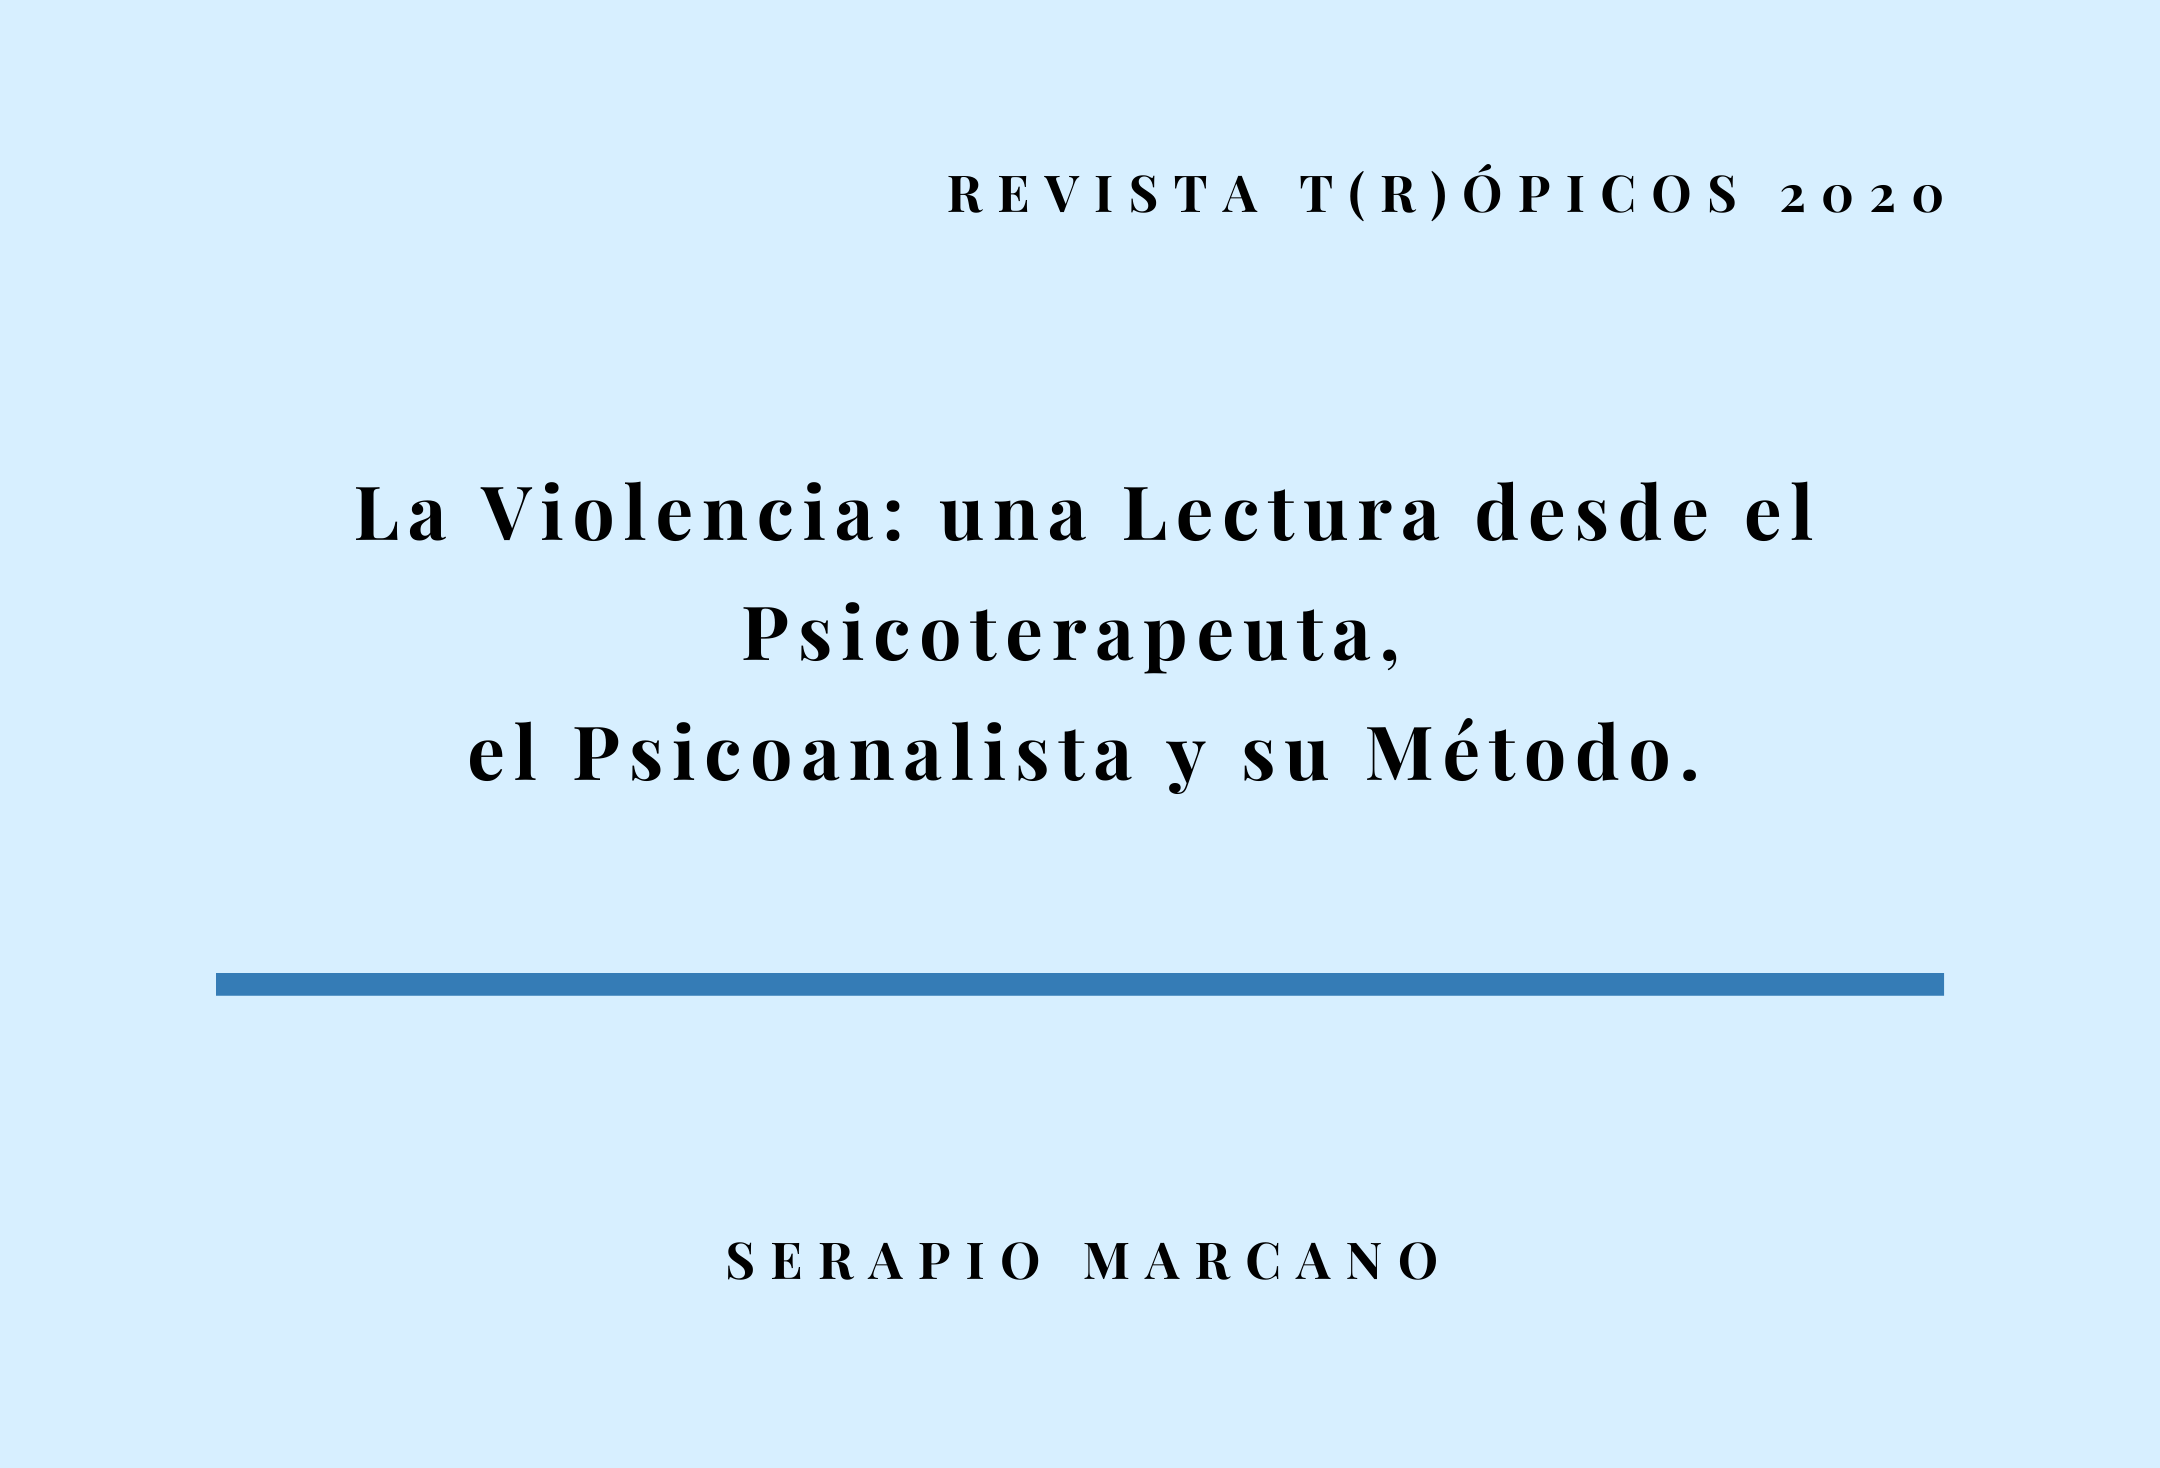 REVISTA TRÓPICOS/La violencia: una lectura desde el psicoterapeuta, el psicoanalista y su método 